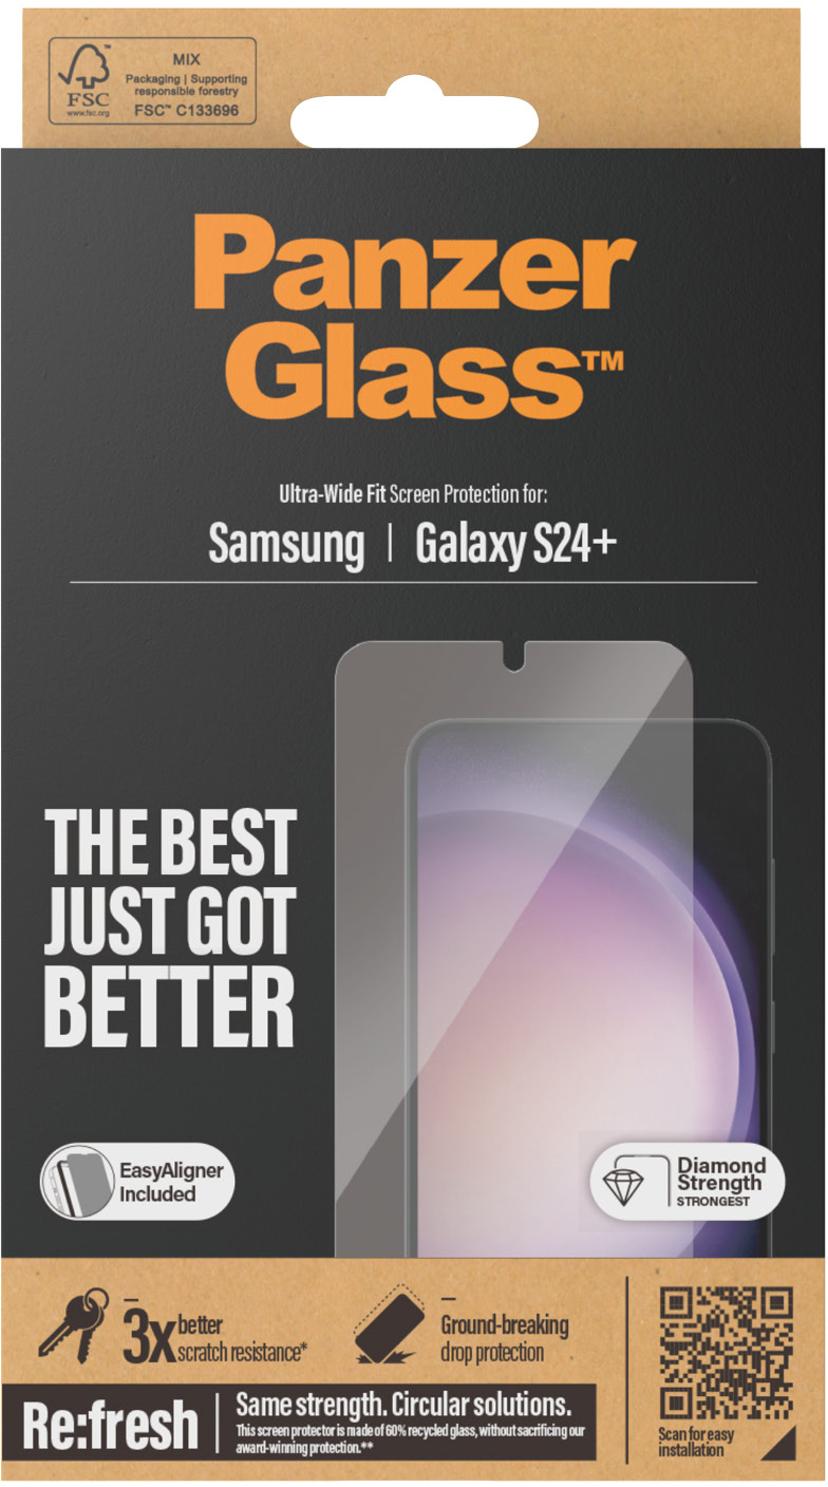 Panzerglass Ultra-Wide Fit Samsung Galaxy S24+